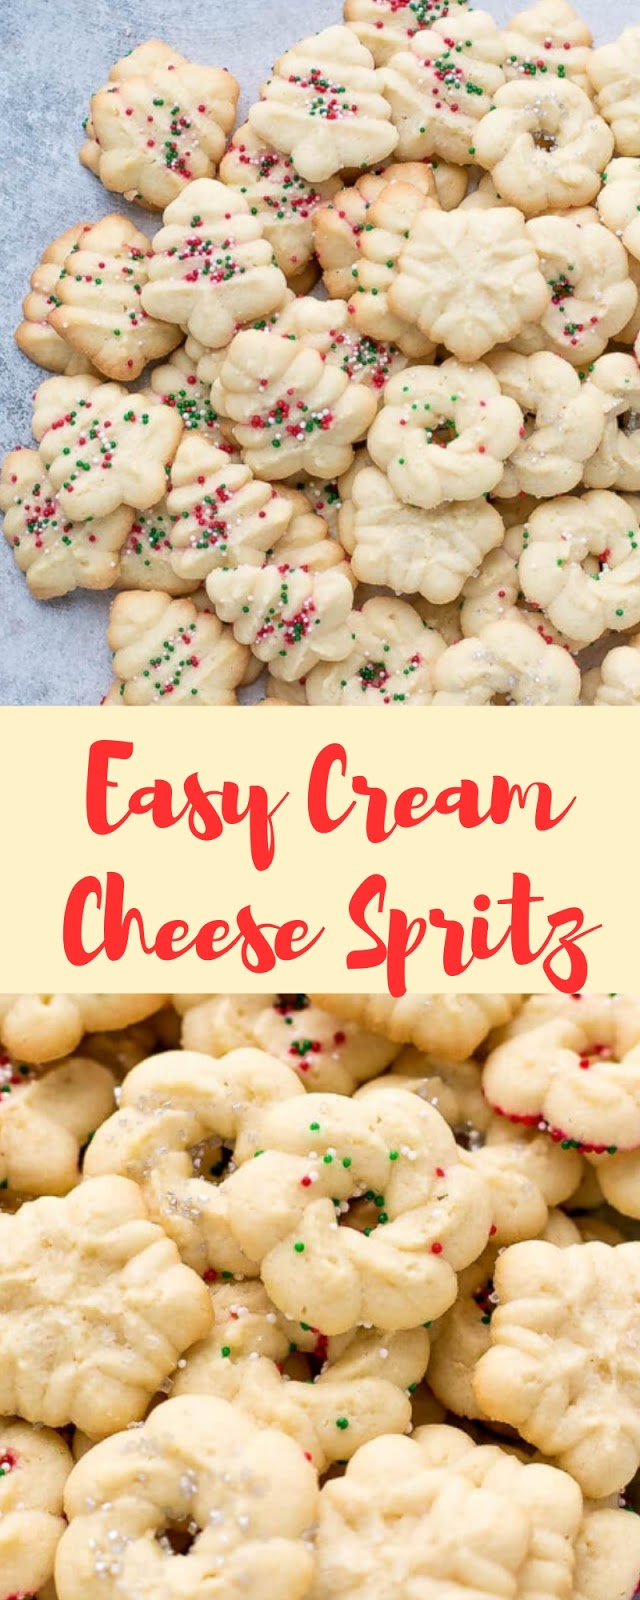 Easy Cream Cheese Spritz